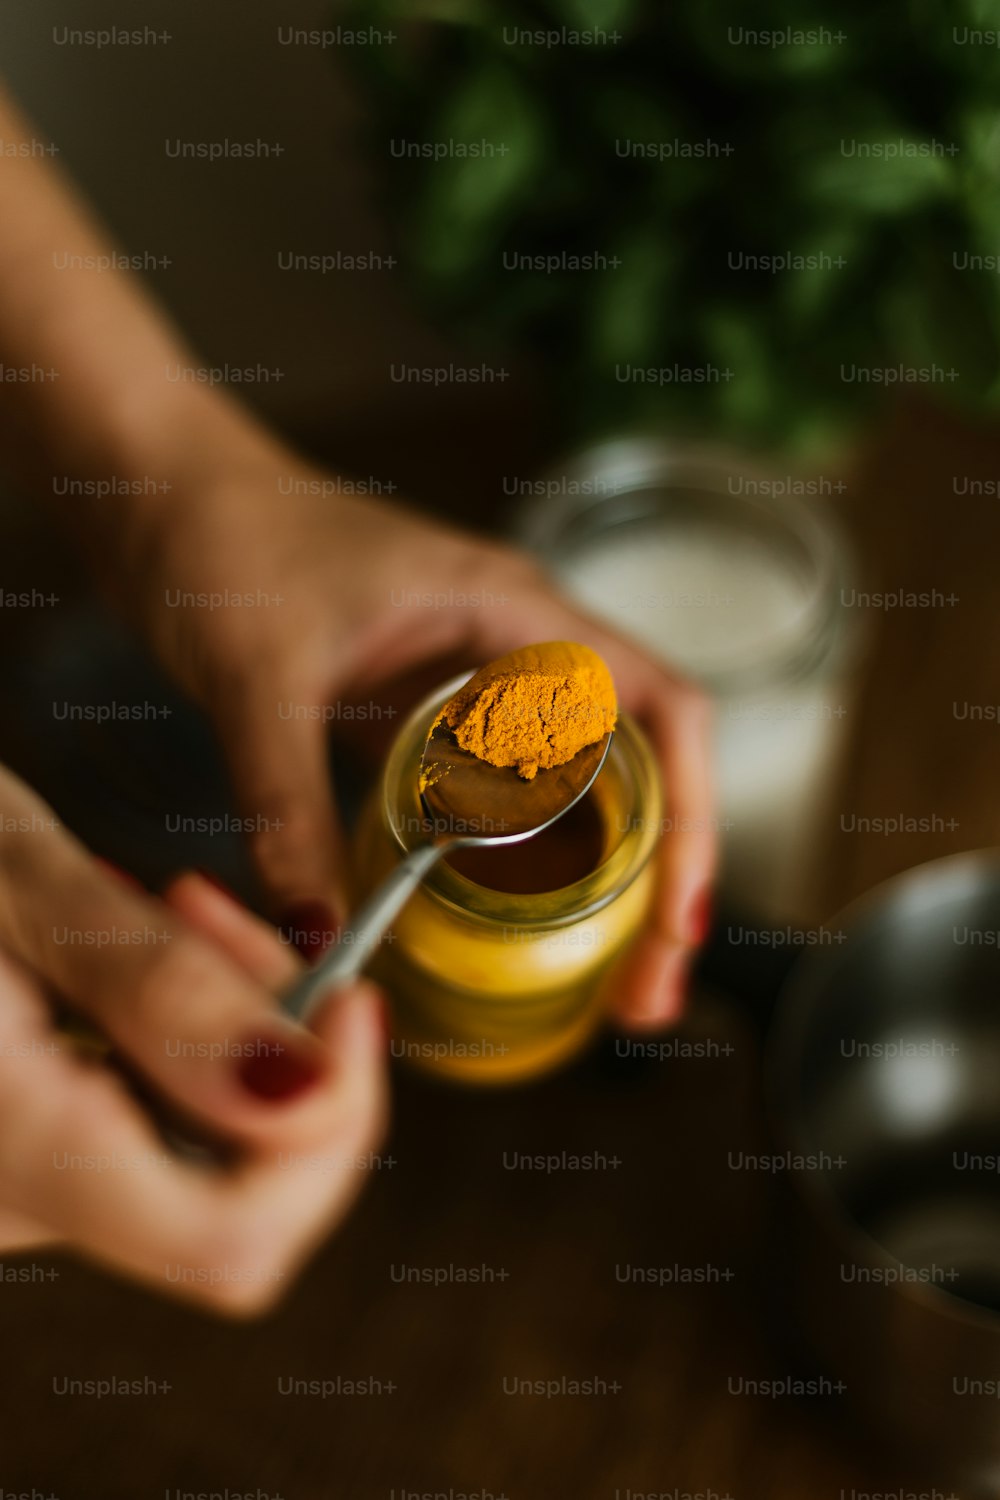 une personne tenant une cuillère au-dessus d’un pot de moutarde